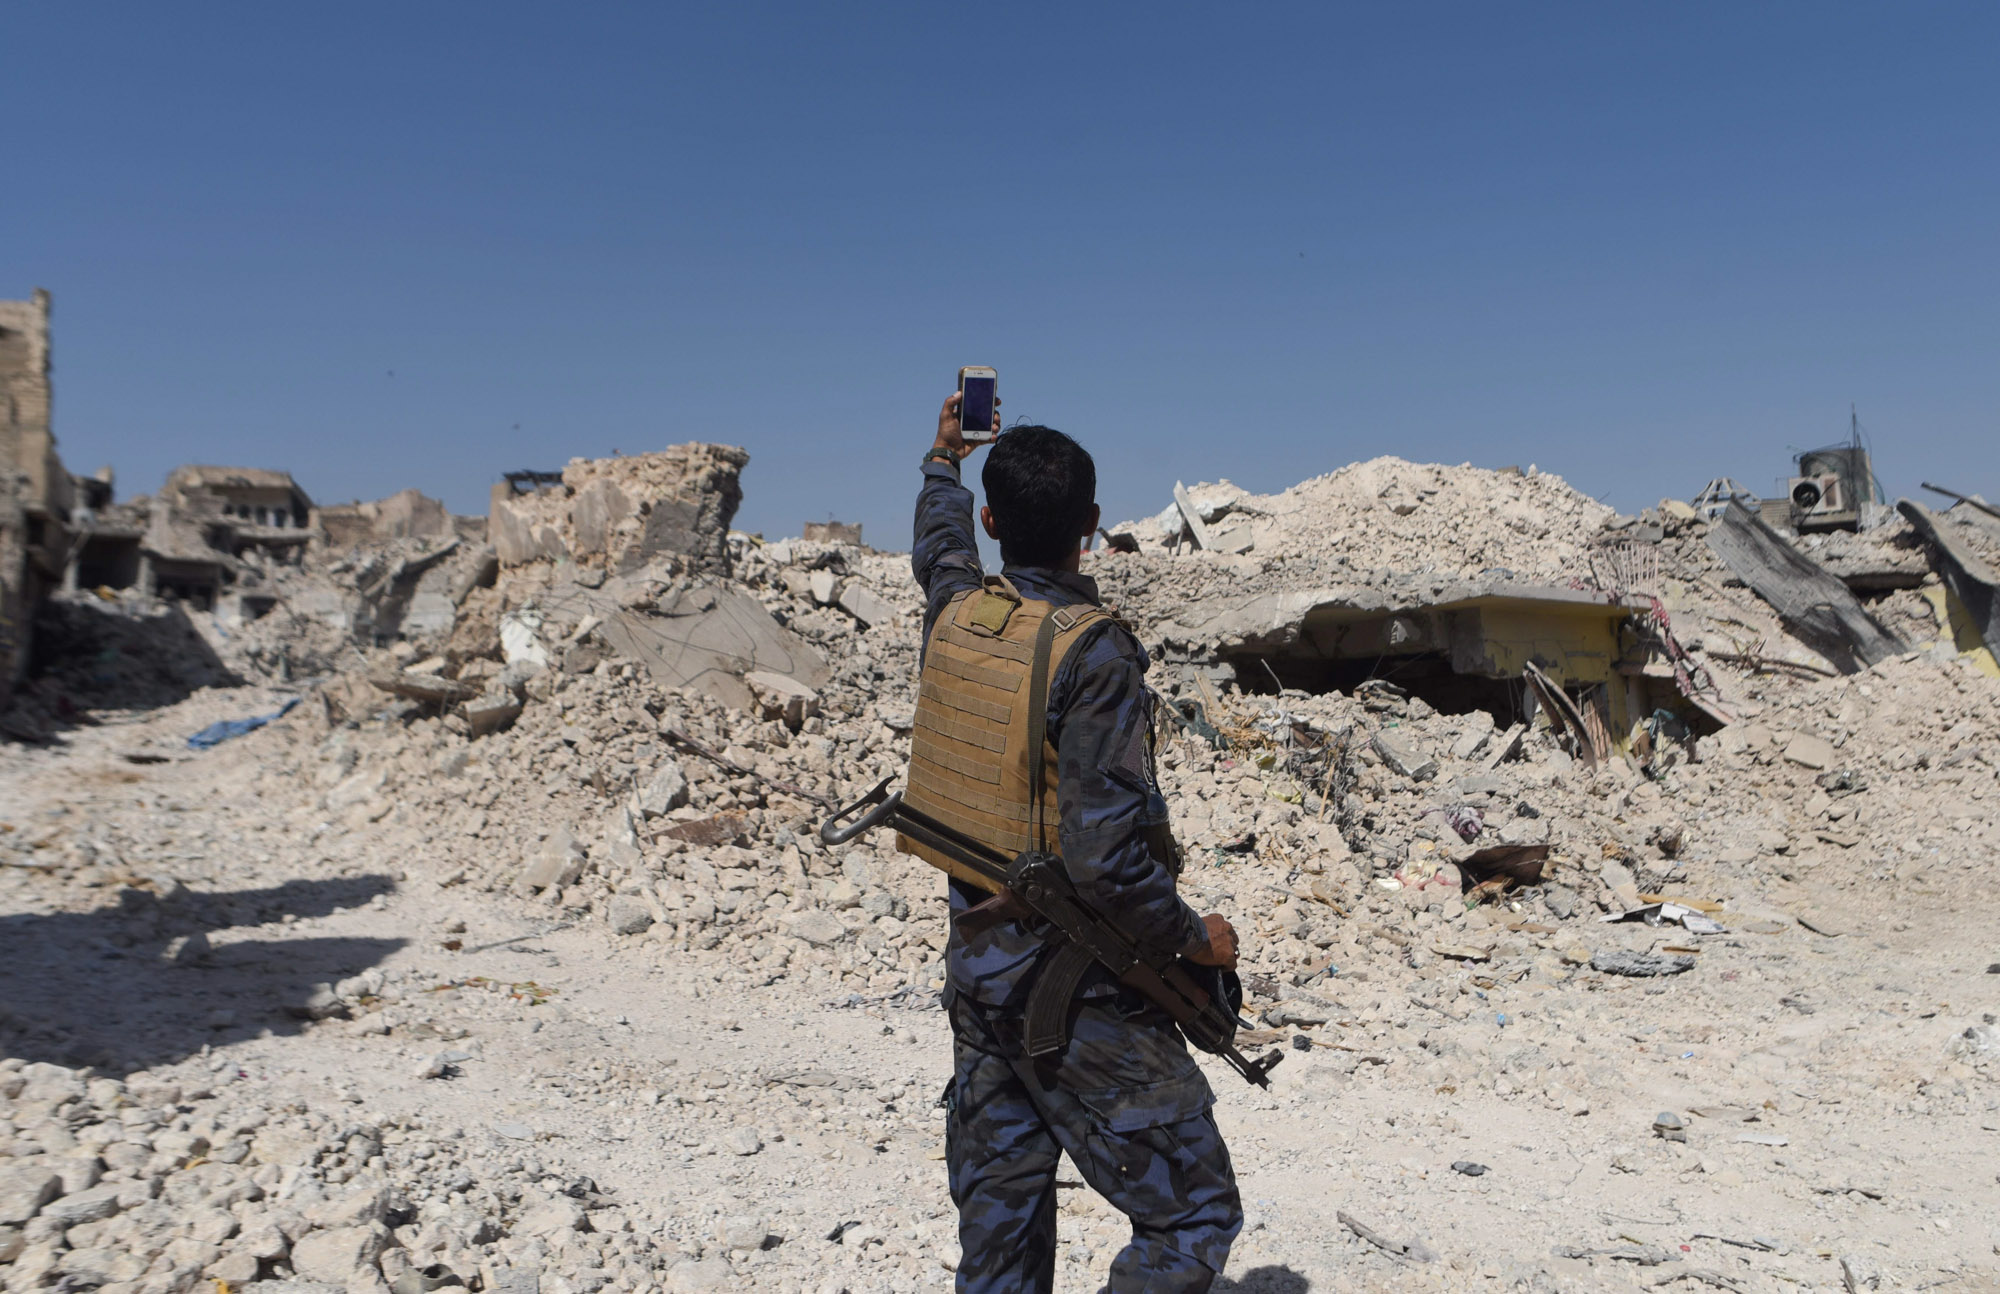 Mosul destruction soldier selfie